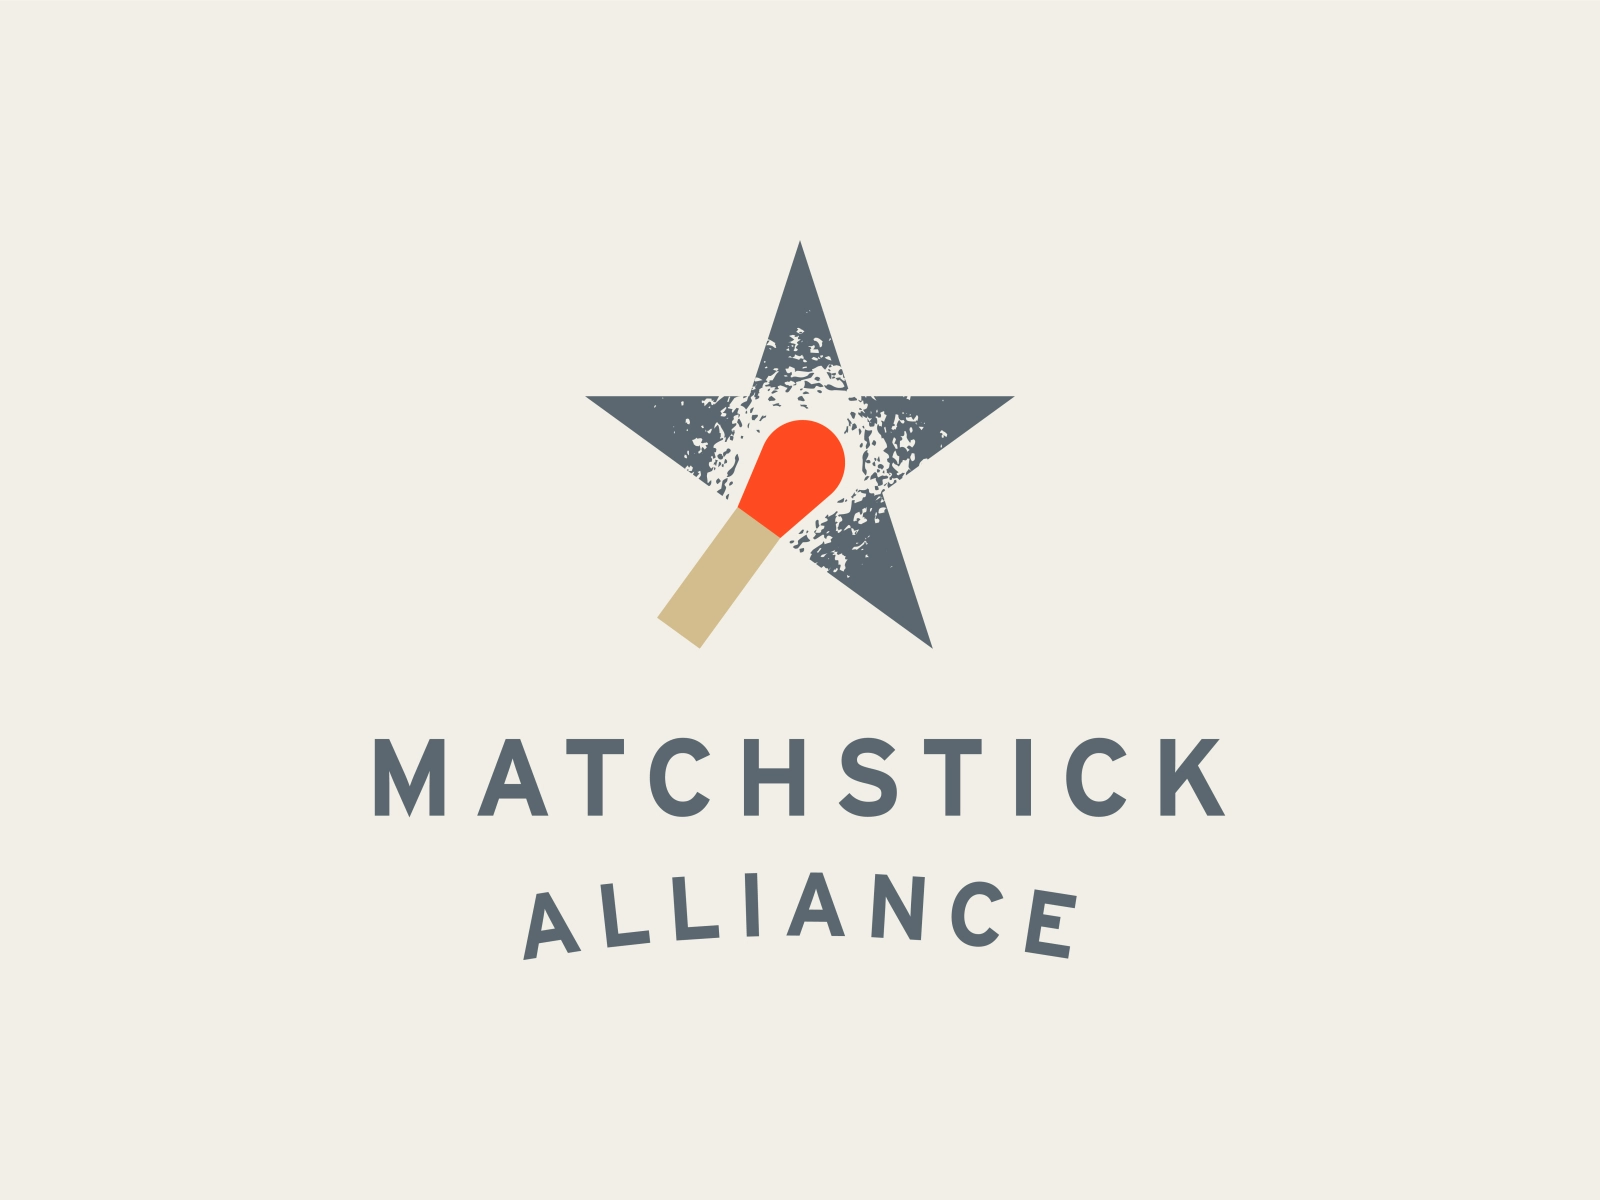 matchstick alliance logo design